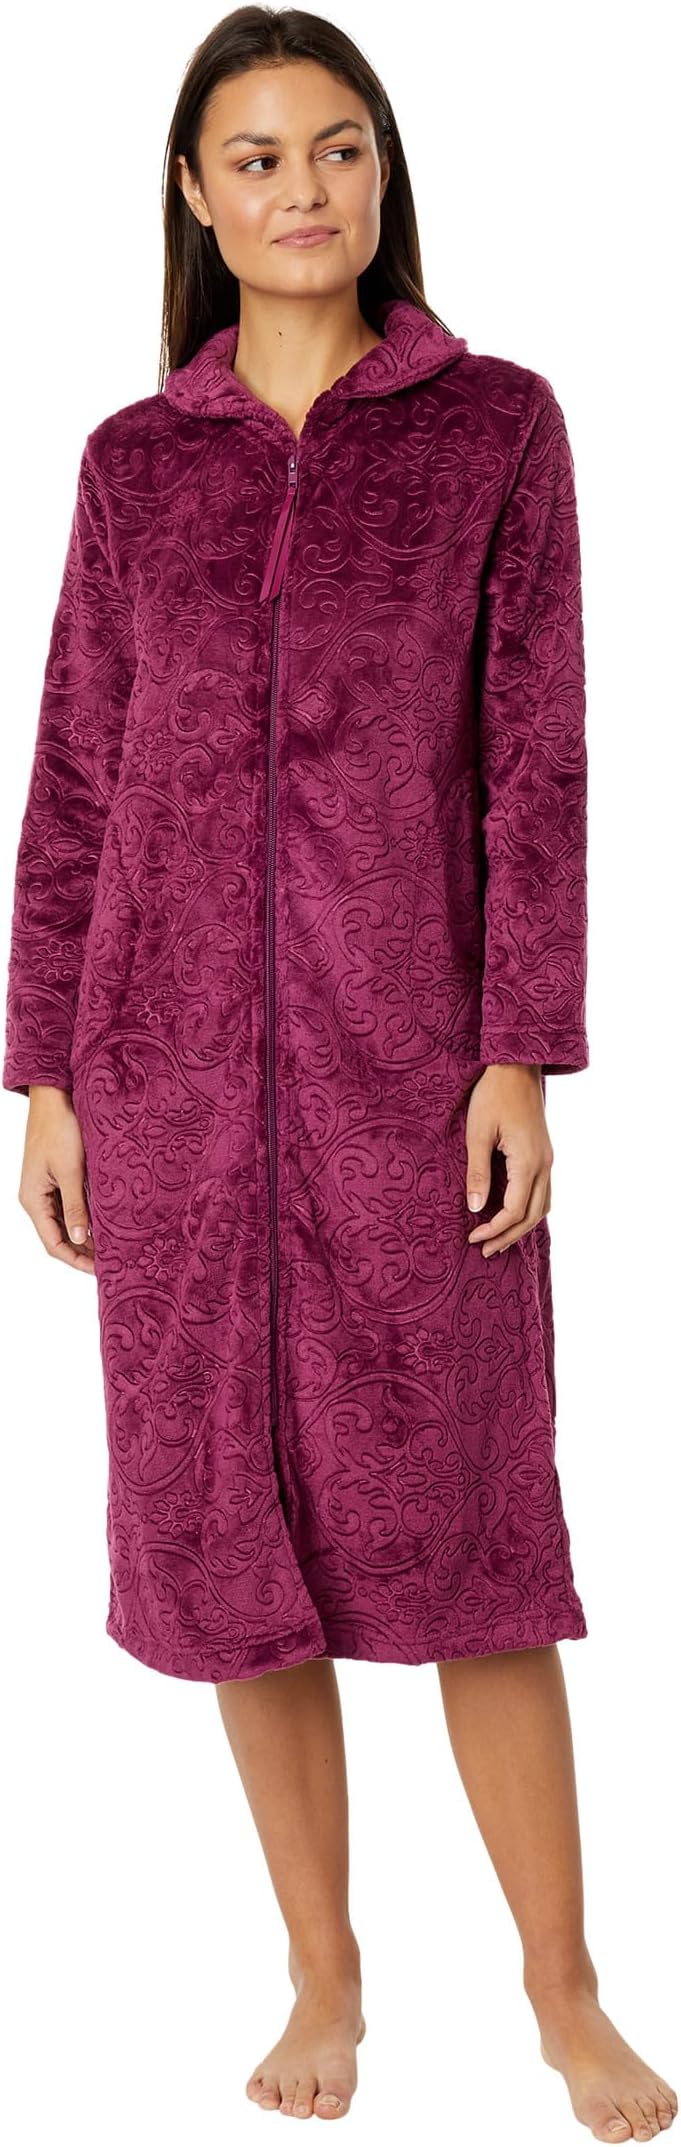 цена Халат Petite Long Sleeve 47 Shawl Collar Zip Robe Karen Neuburger, пурпурный